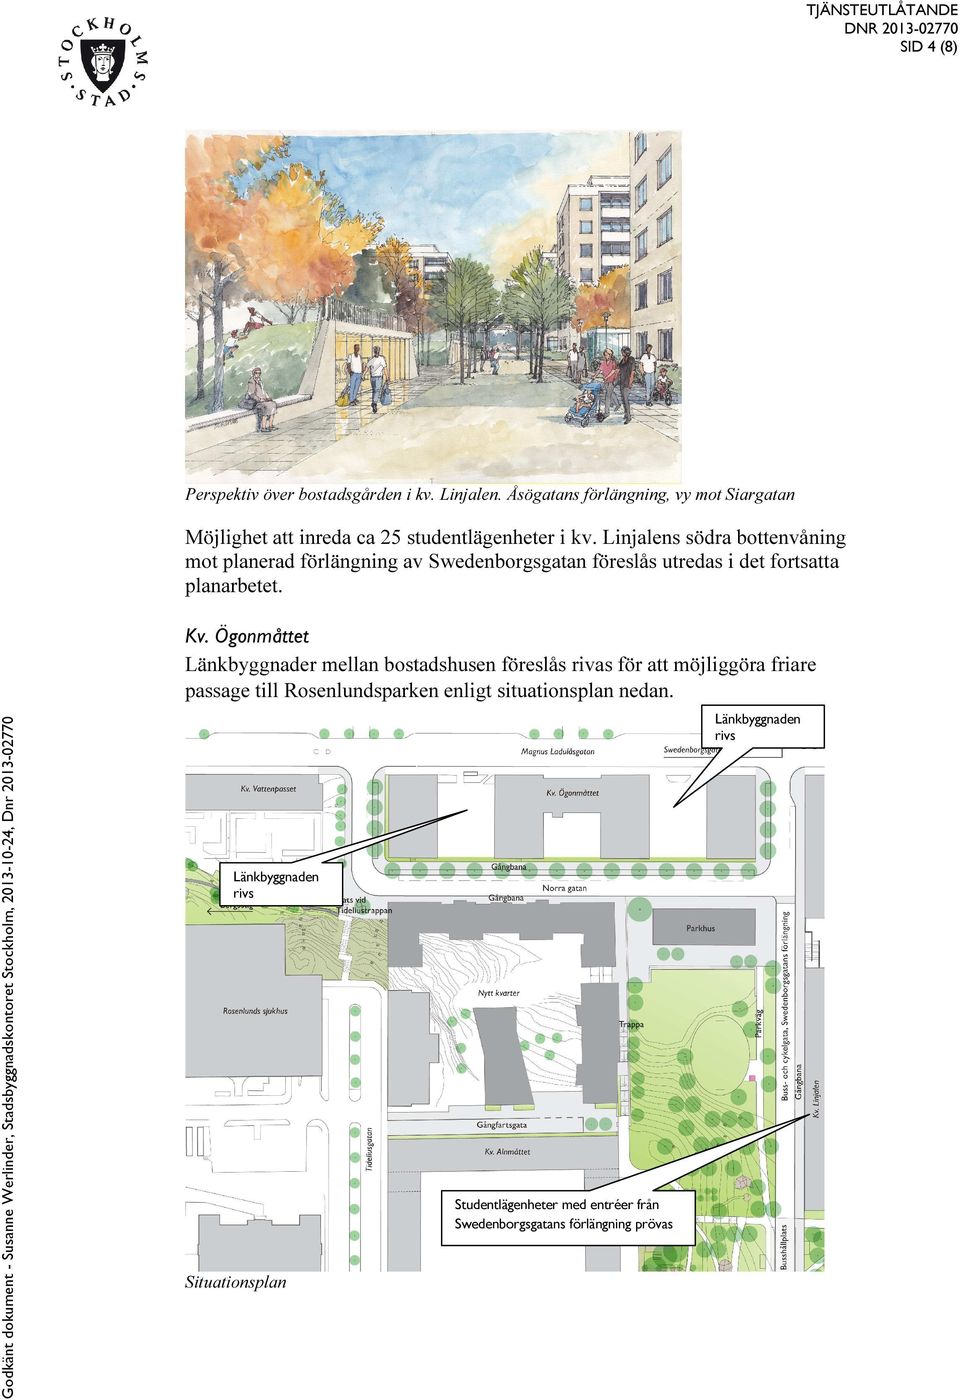 Linjalens södra bottenvåning mot planerad förlängning av Swedenborgsgatan föreslås utredas i det fortsatta planarbetet. Kv.